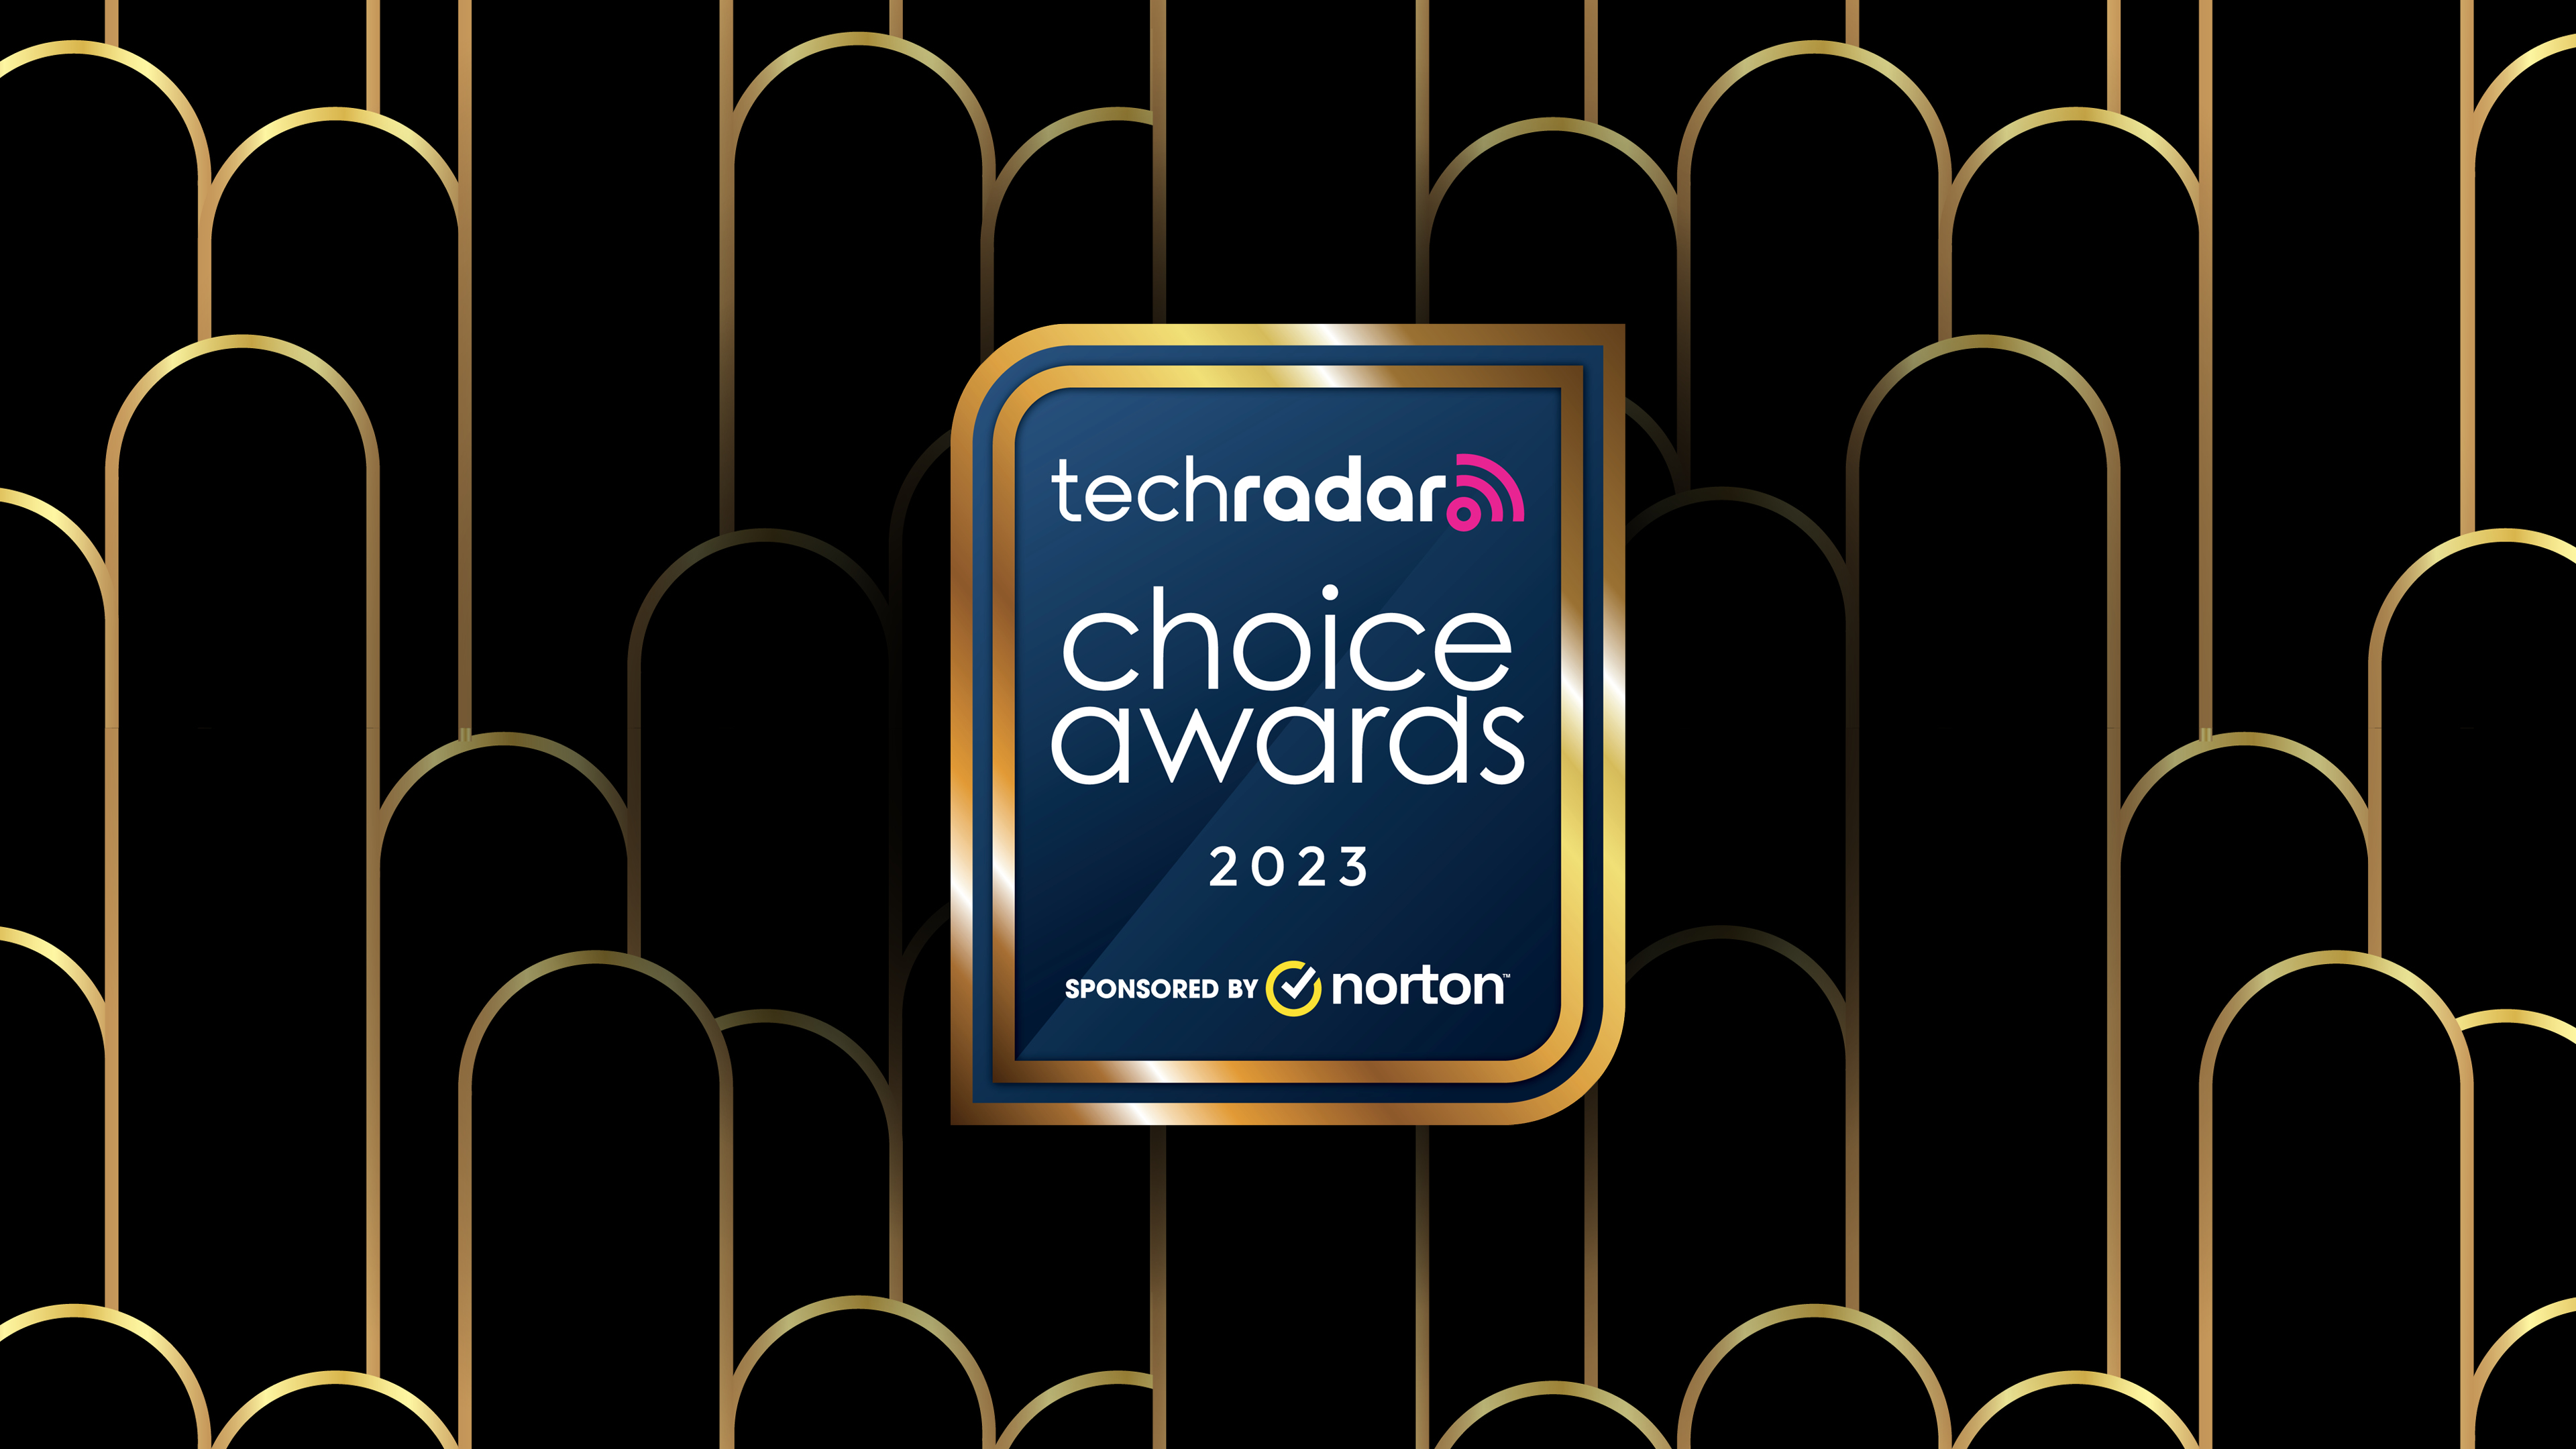 TechRadar Choice Awards 2023 logo on an art deco background